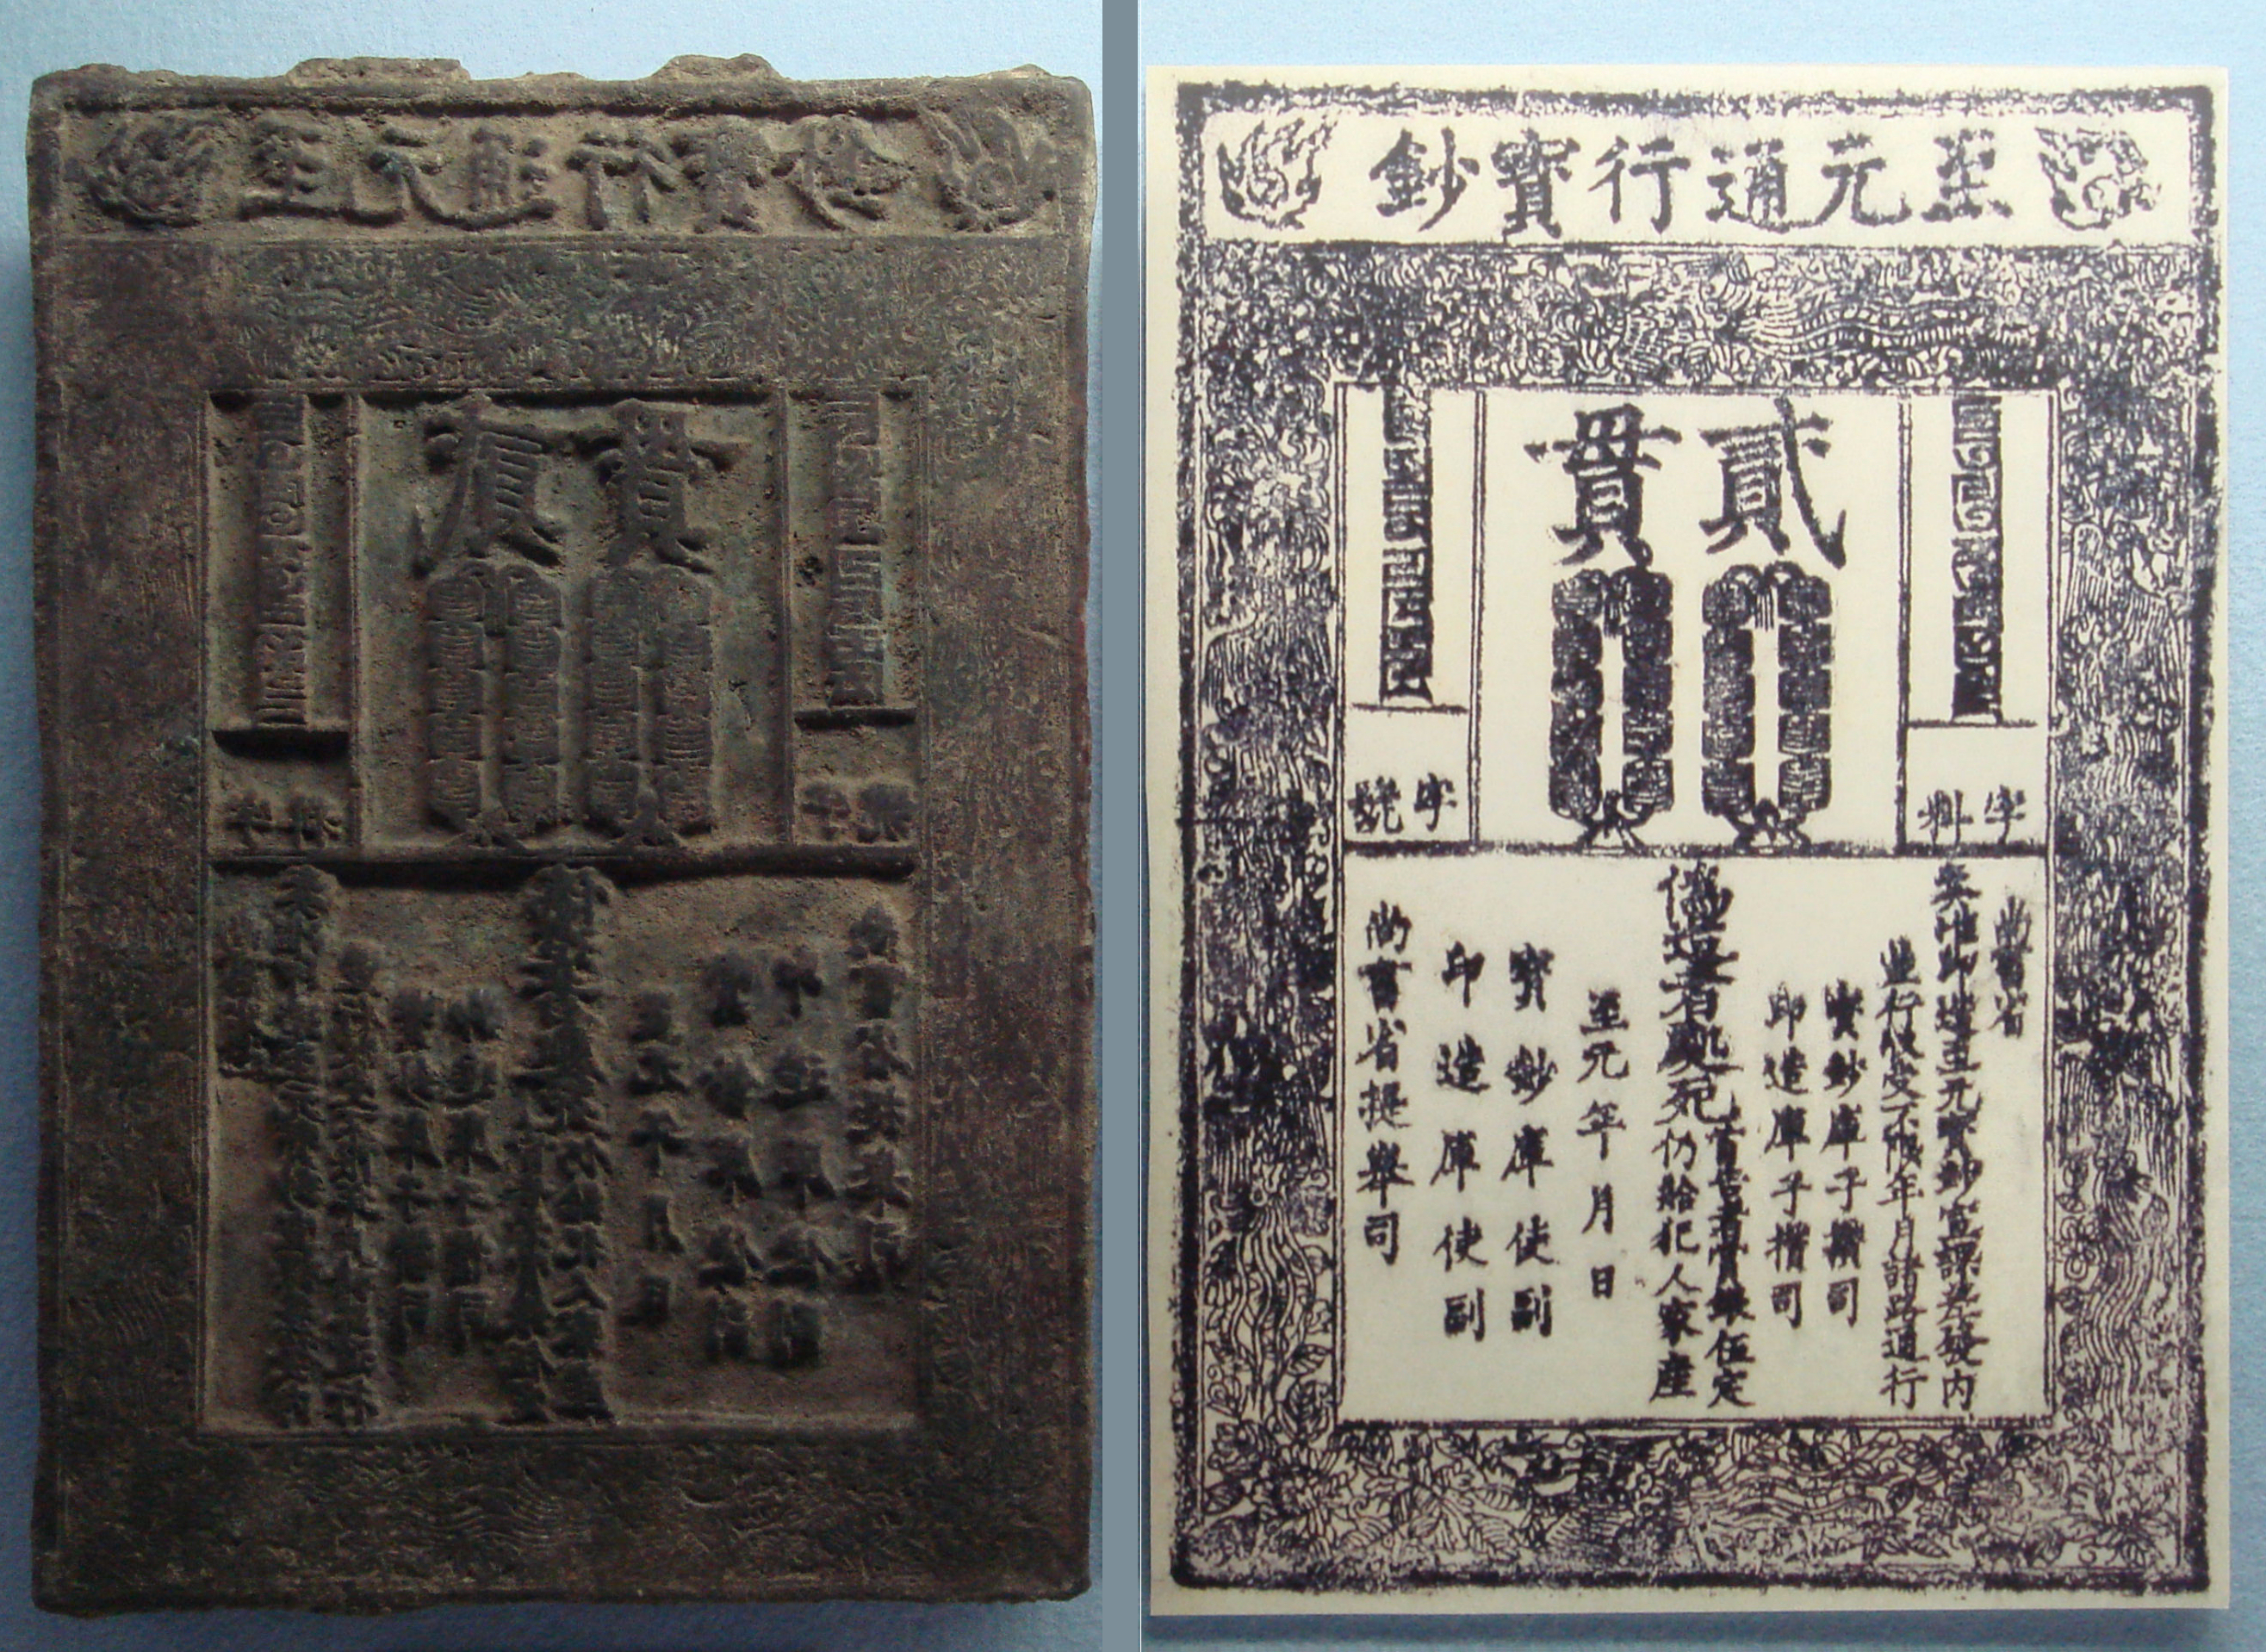 2. Primii "bani" au fost folositi in China, inca din anul 618